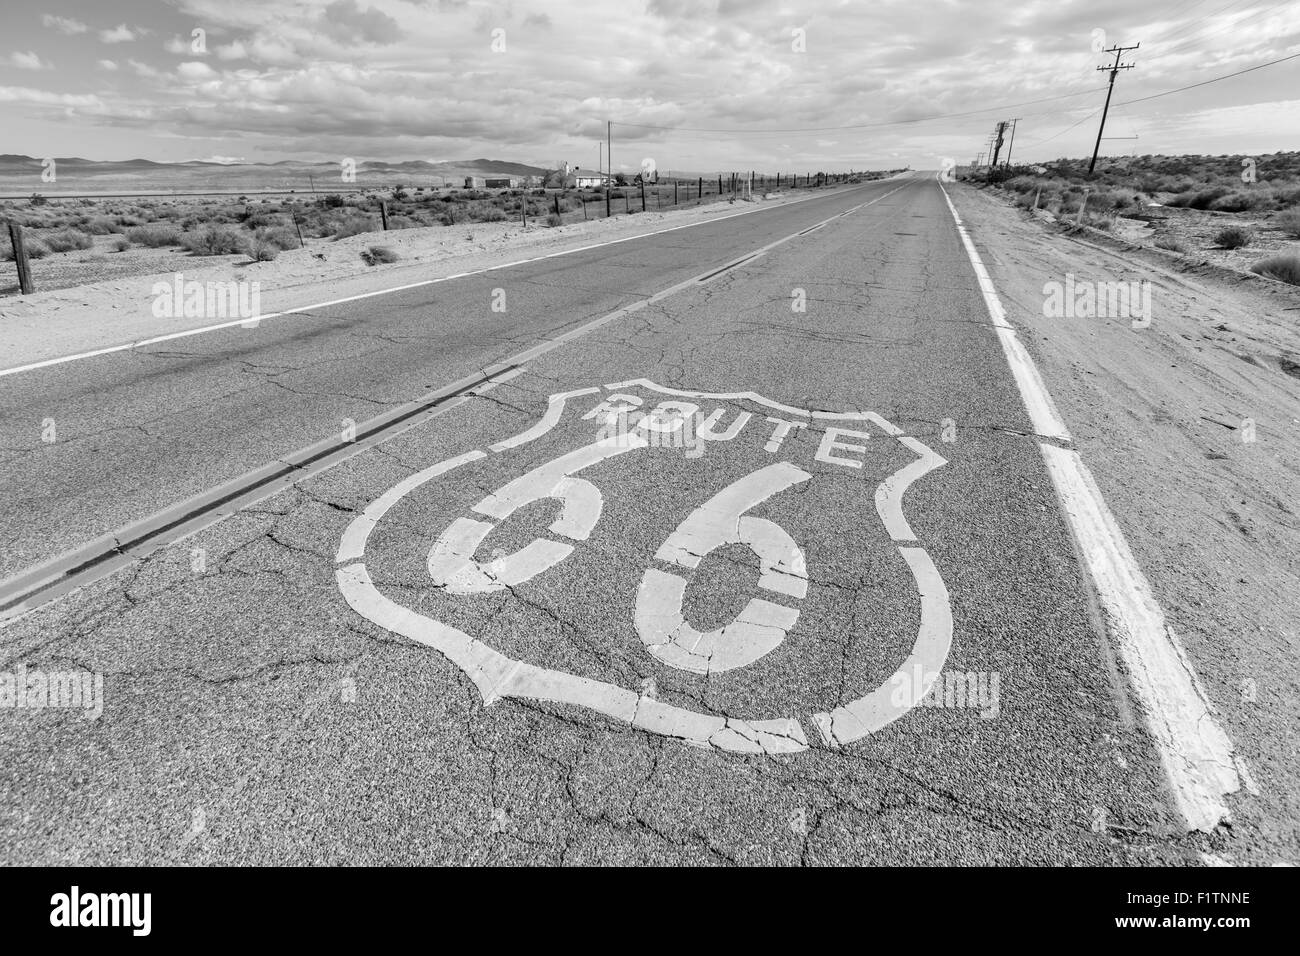 La vieille Route 66 trottoir désert signe en noir et blanc Banque D'Images